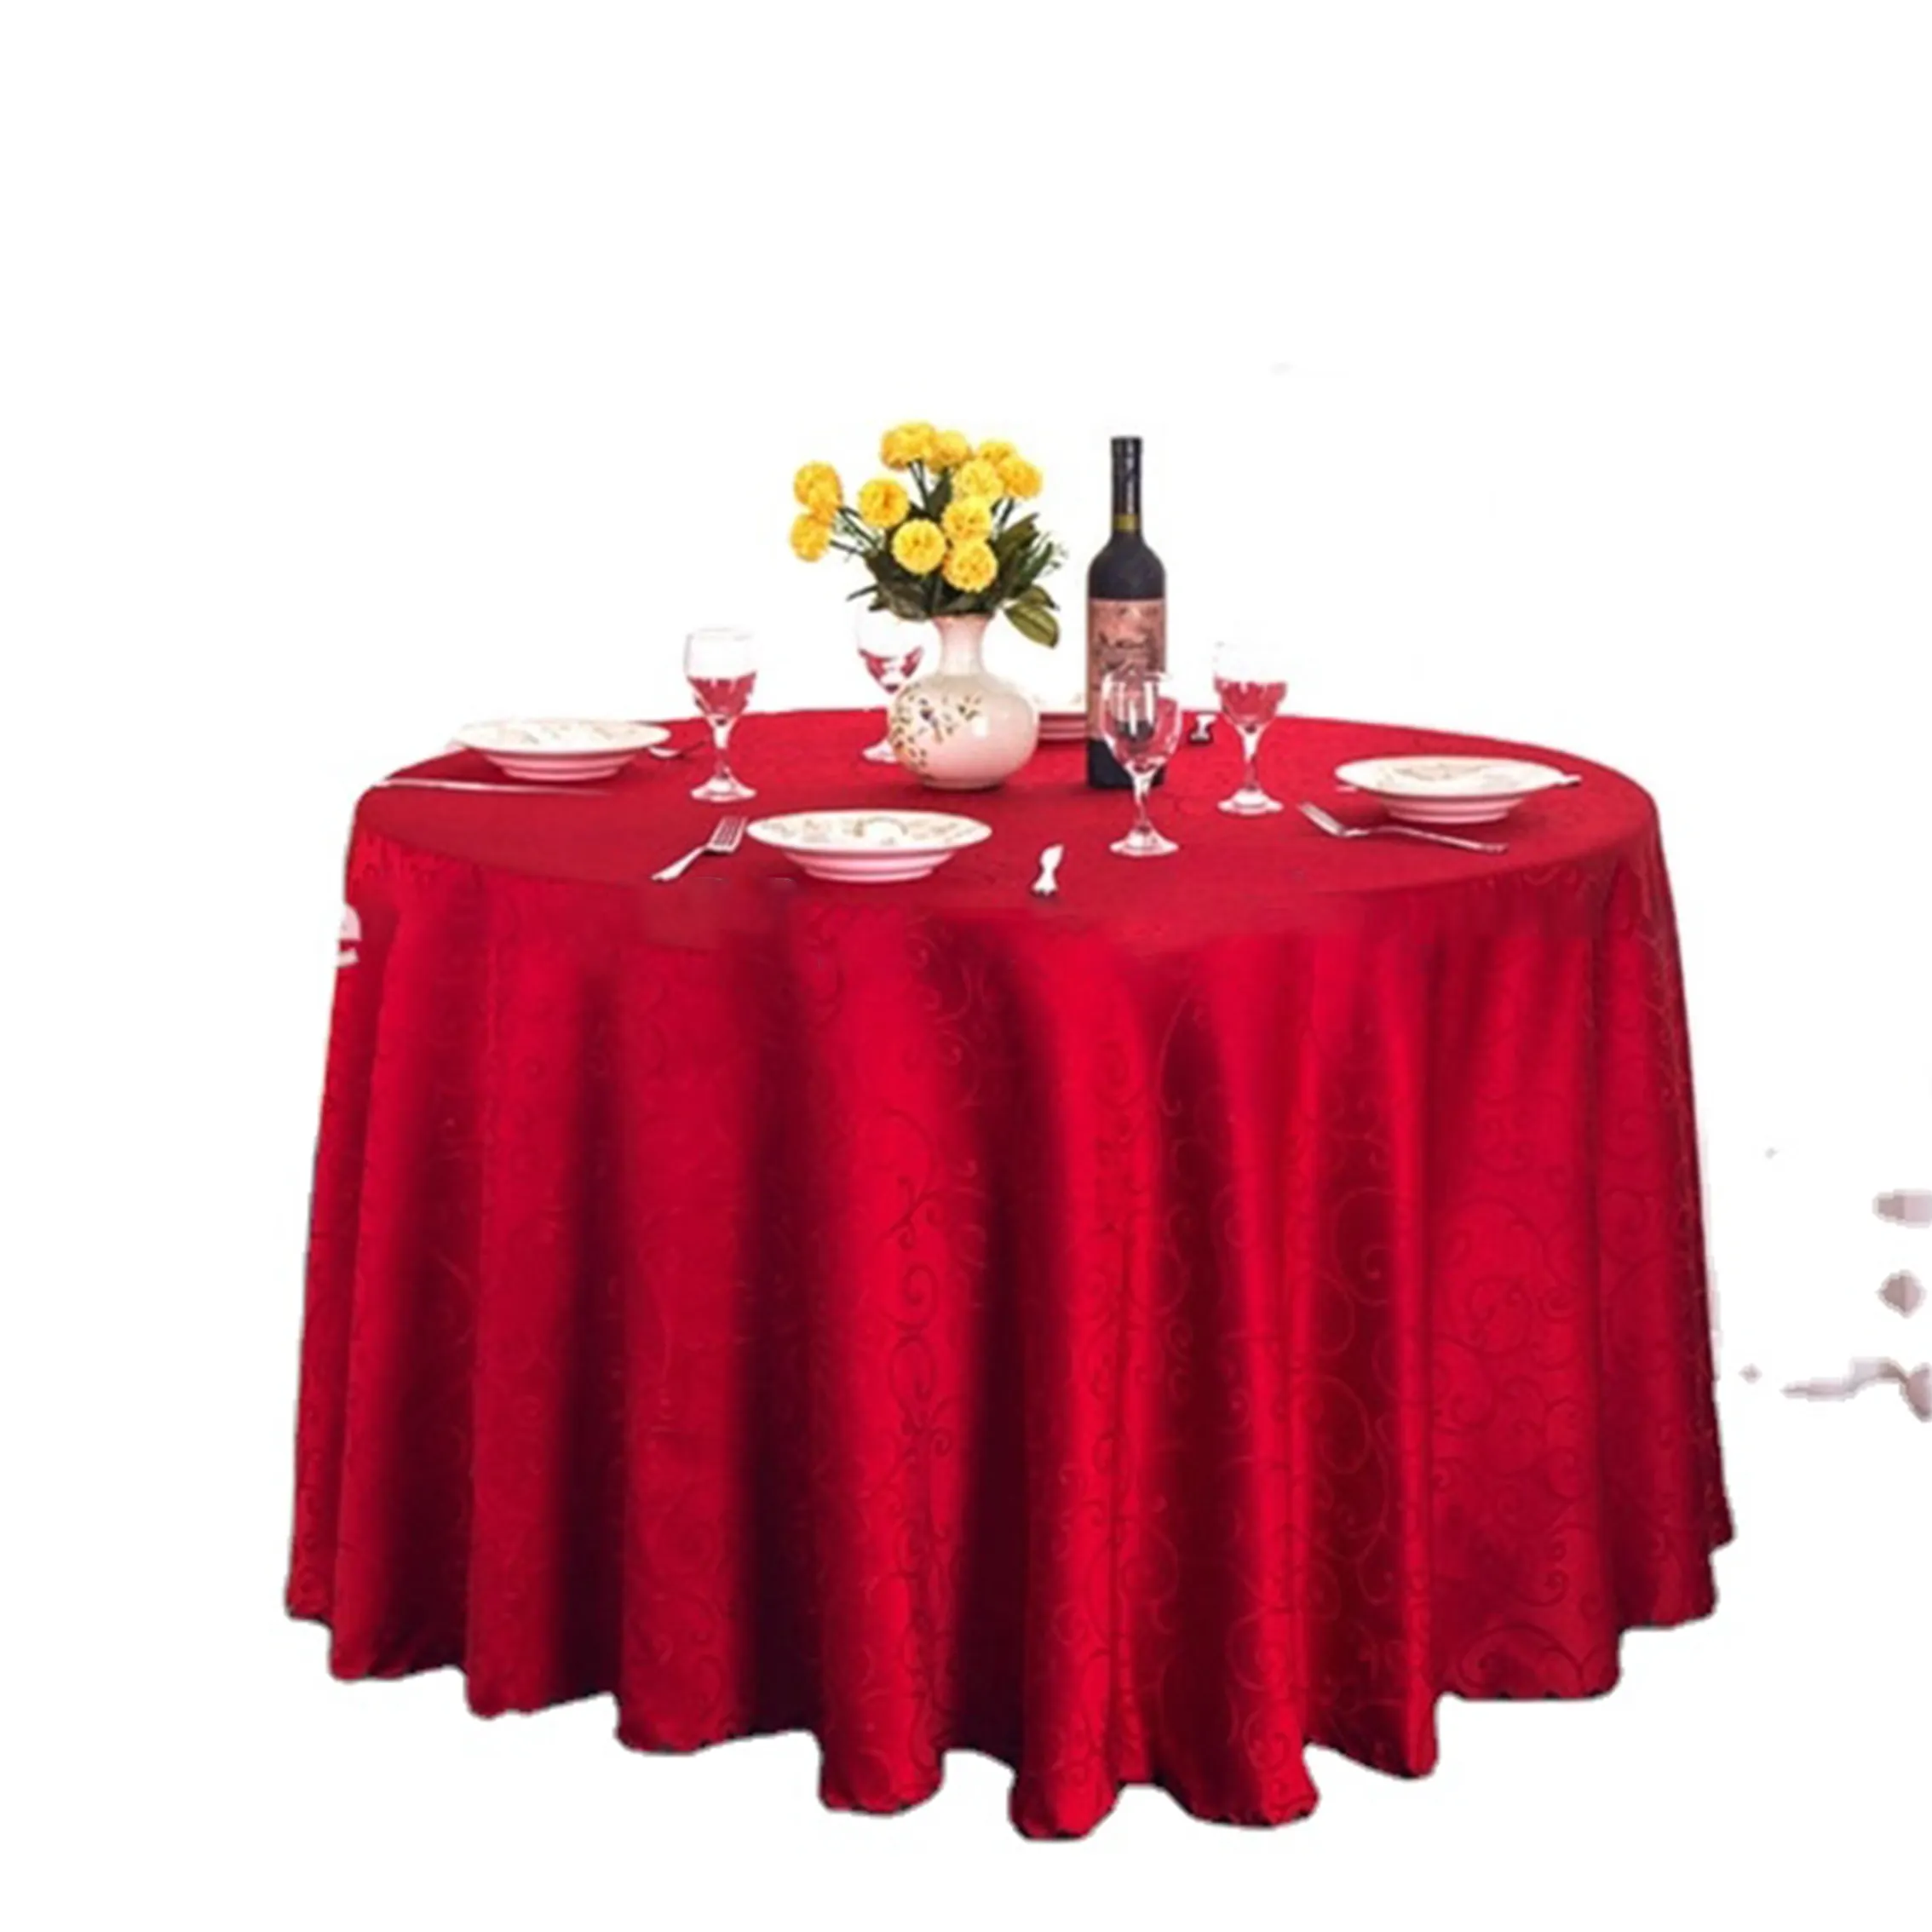 Rechteckige runde Jacquard-Damast-Tischdecke aus Polyester für Hochzeitsfeier-Hotel dekorationen